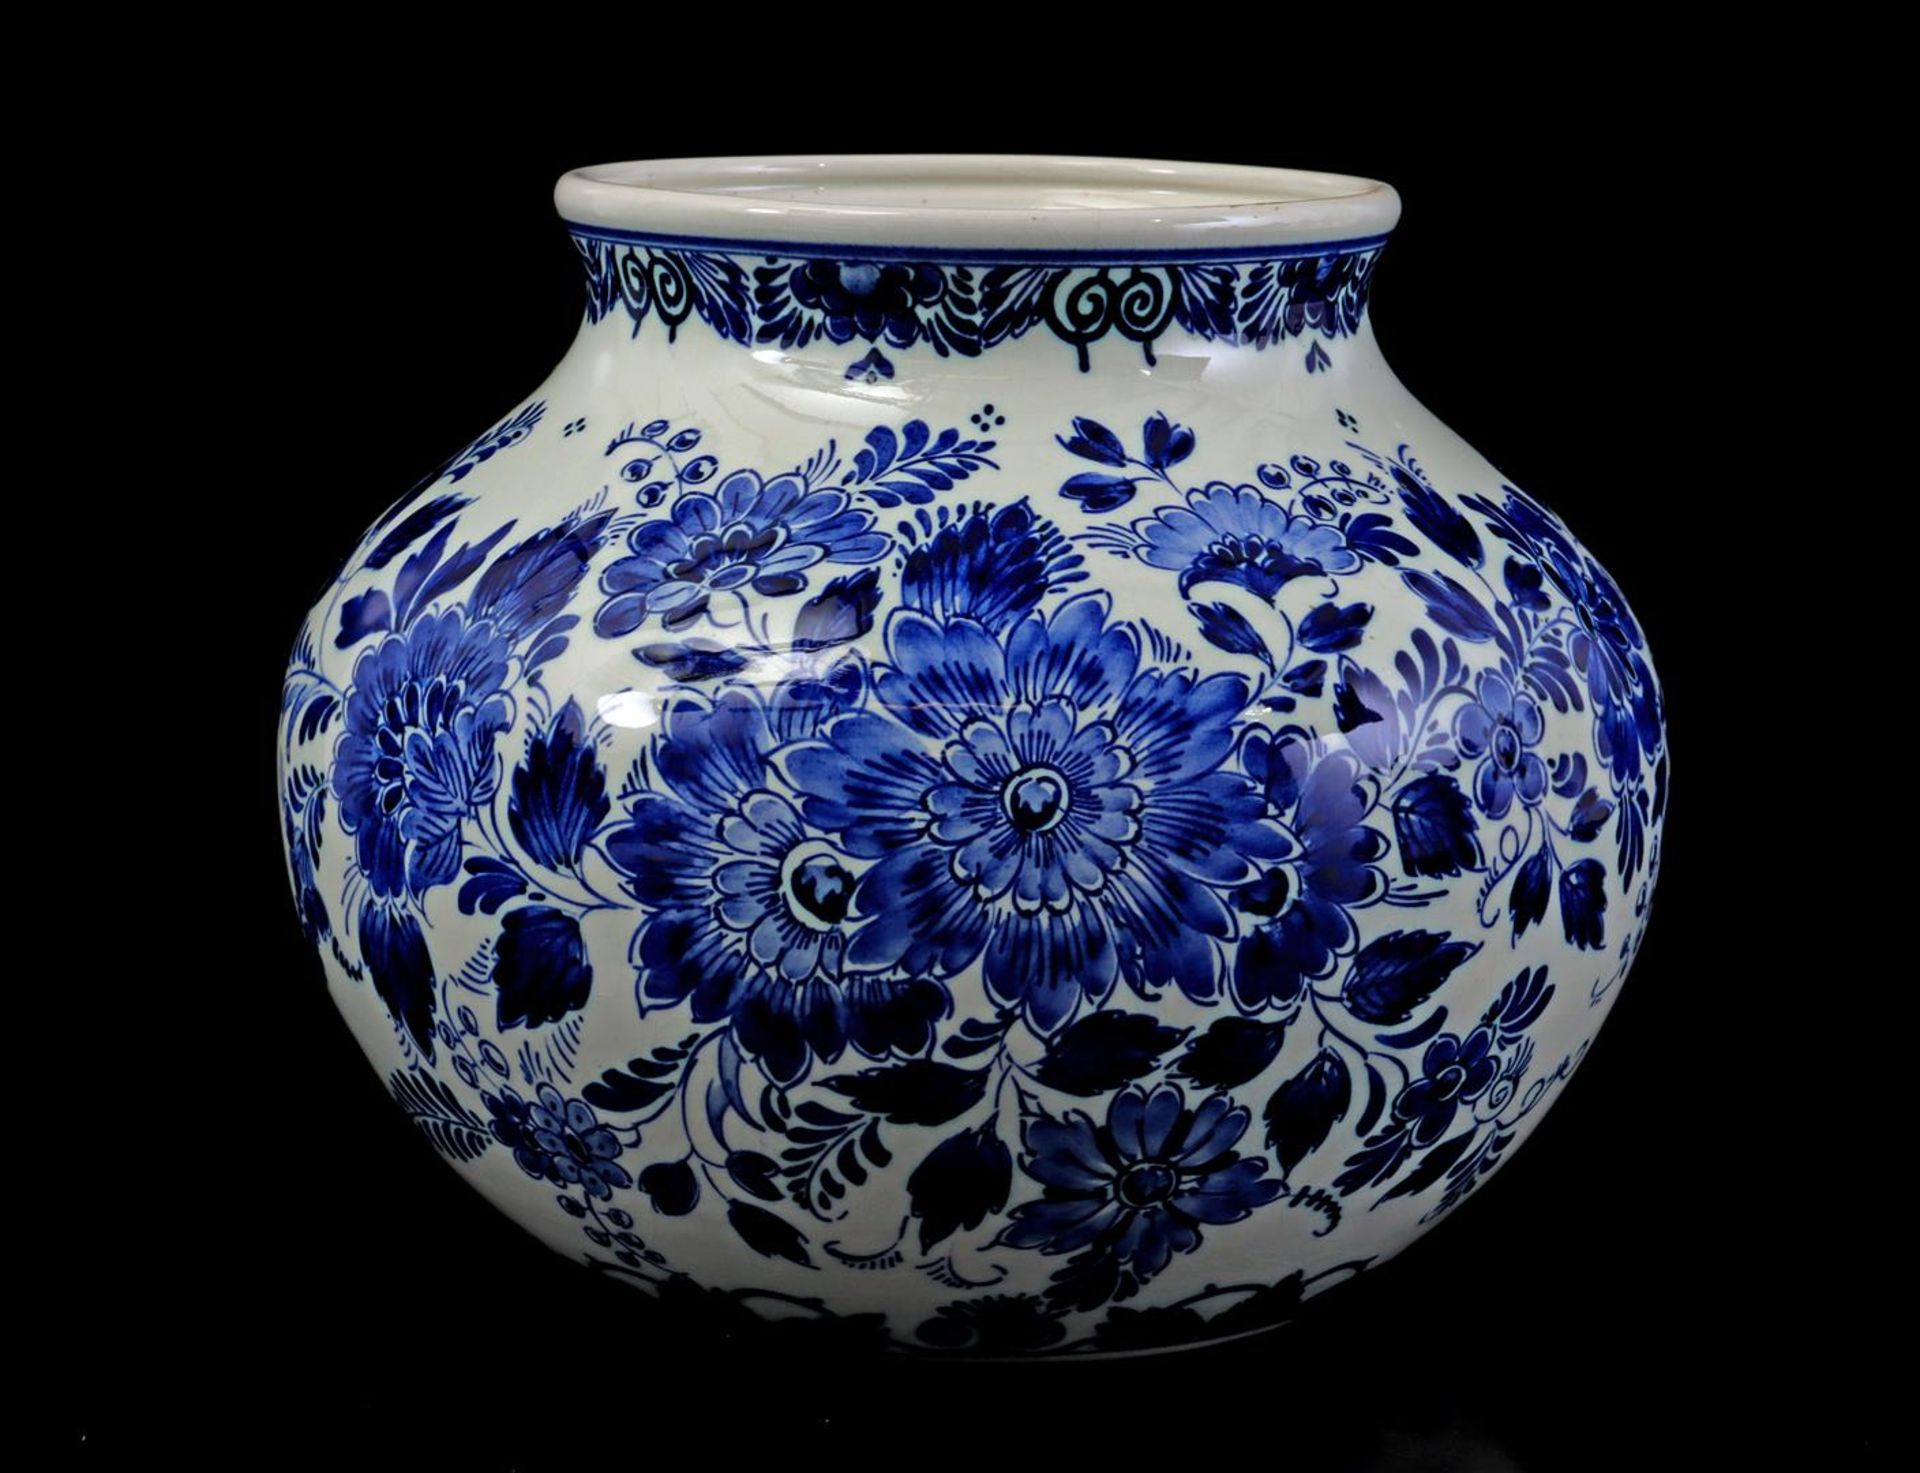 Ram earthenware vase